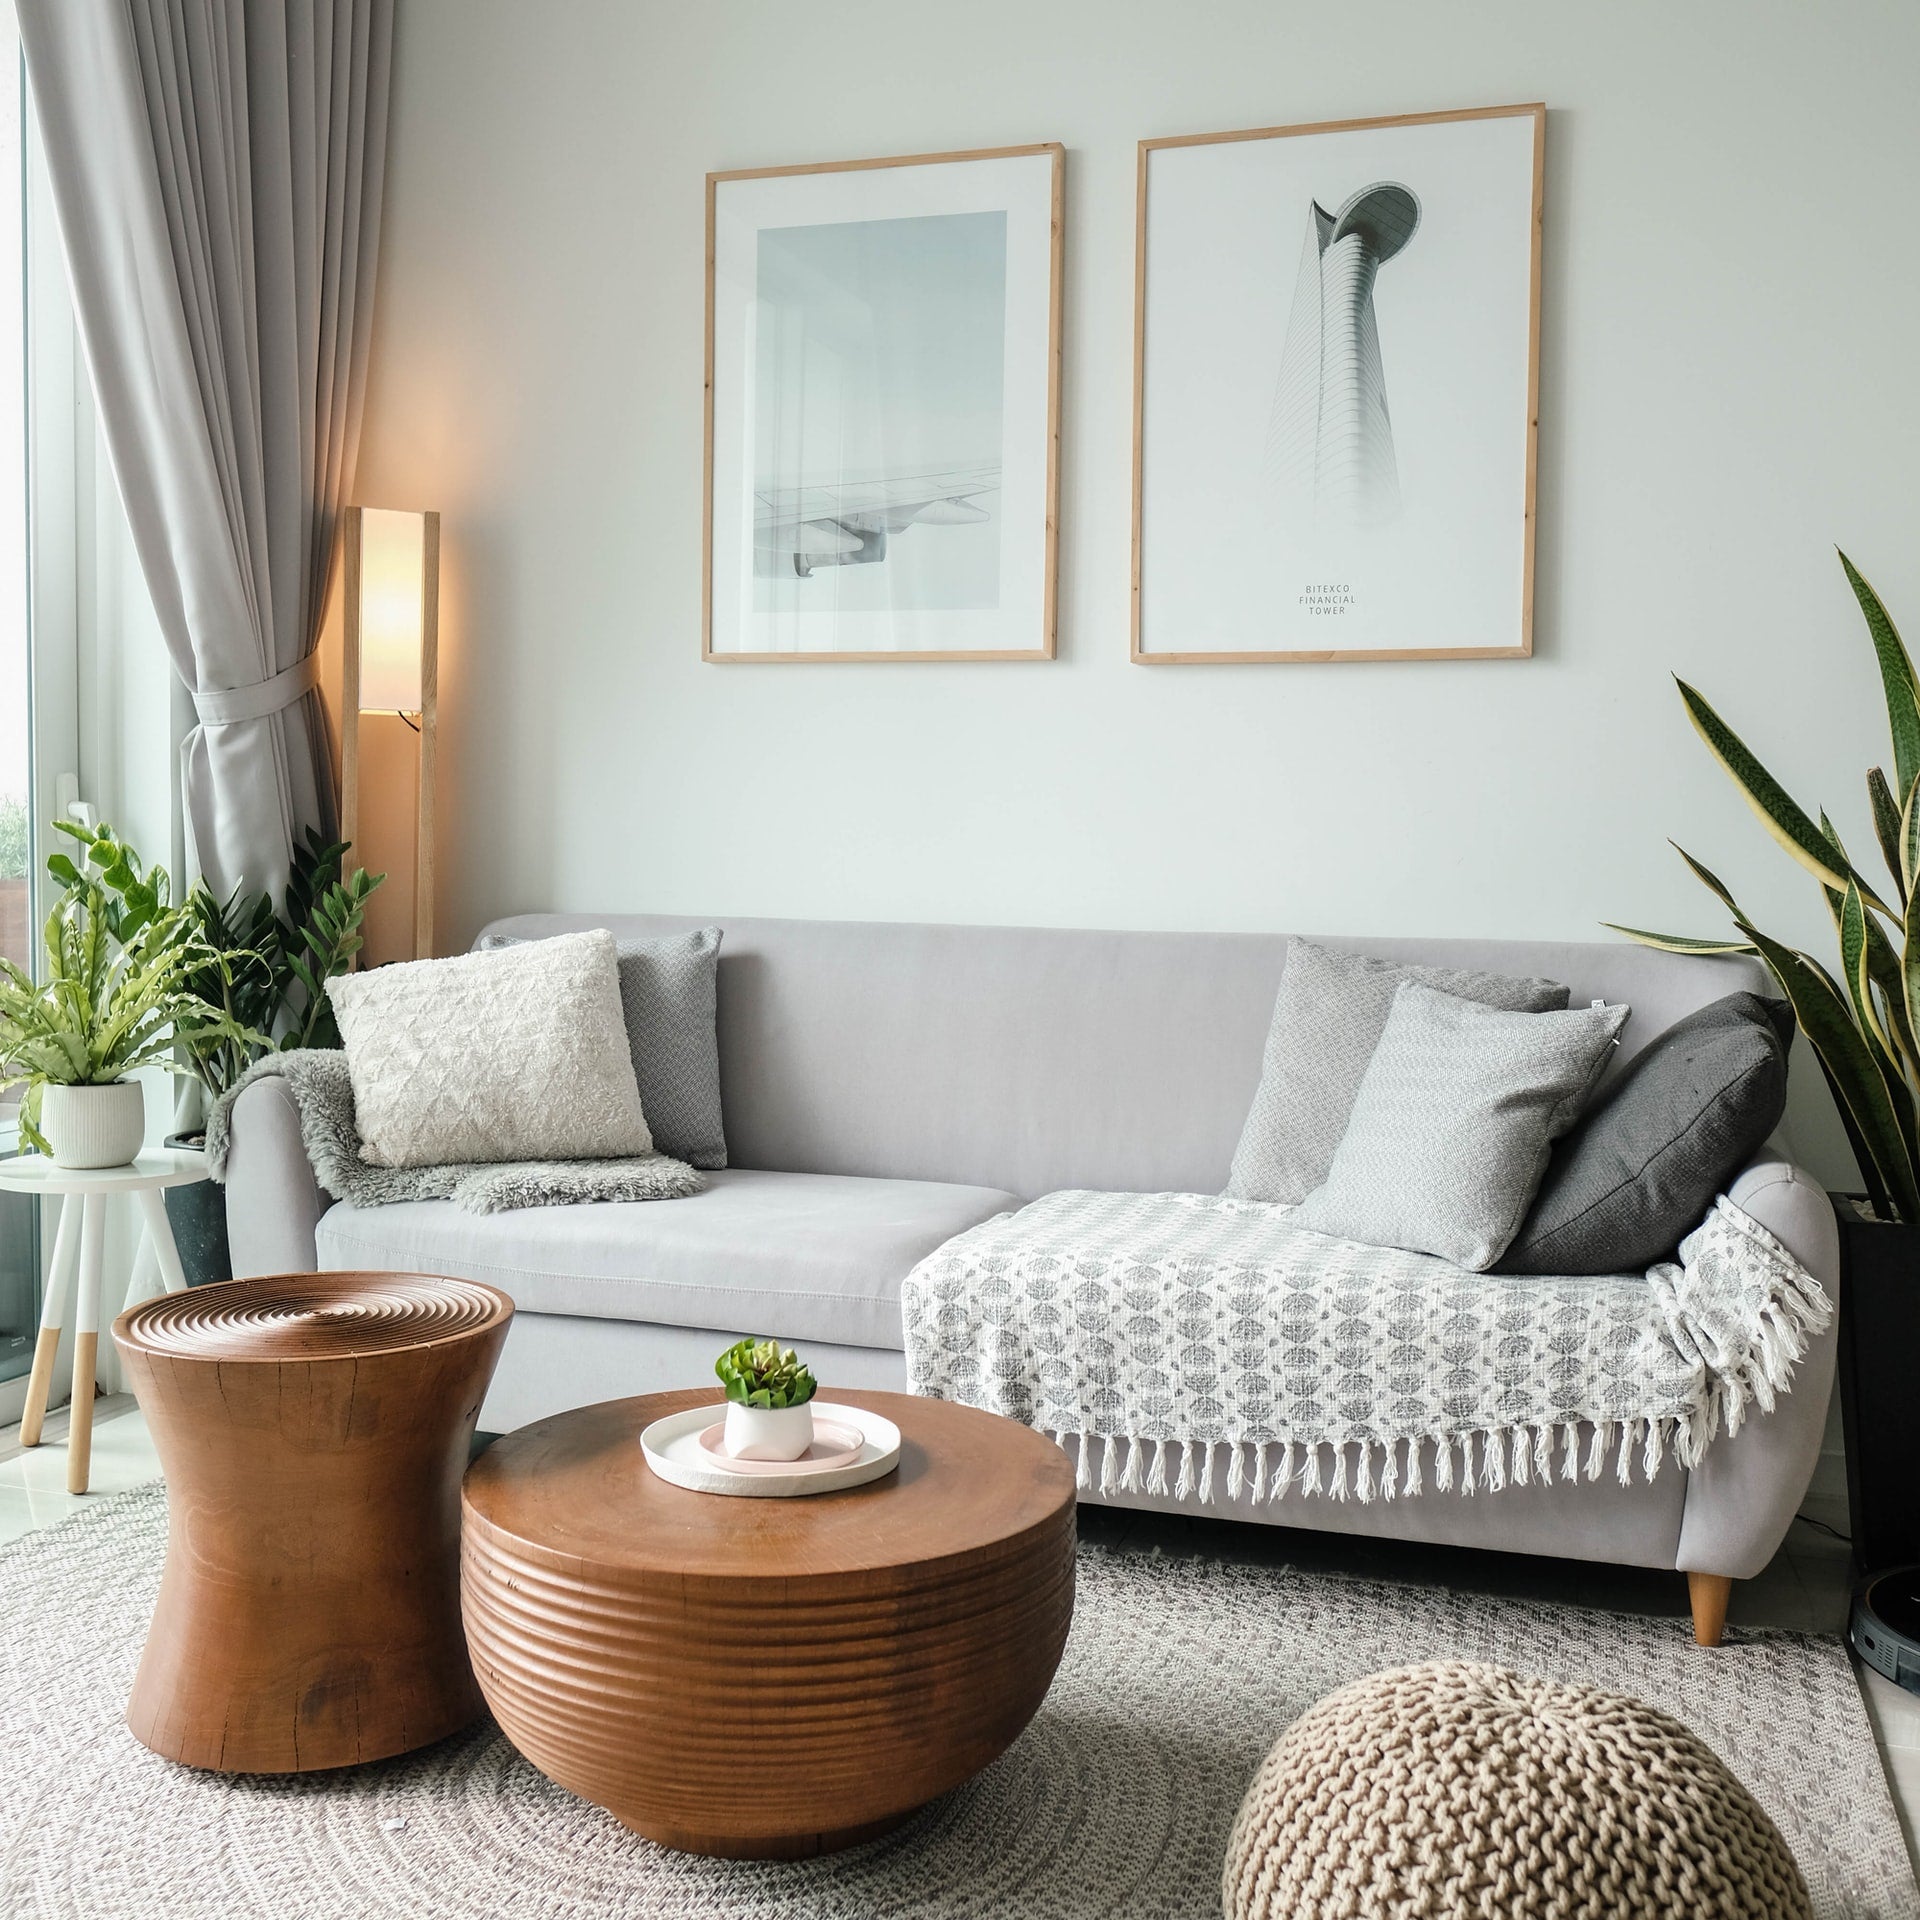 Hoe creëer jij een gezellige zithoek in je woonkamer?